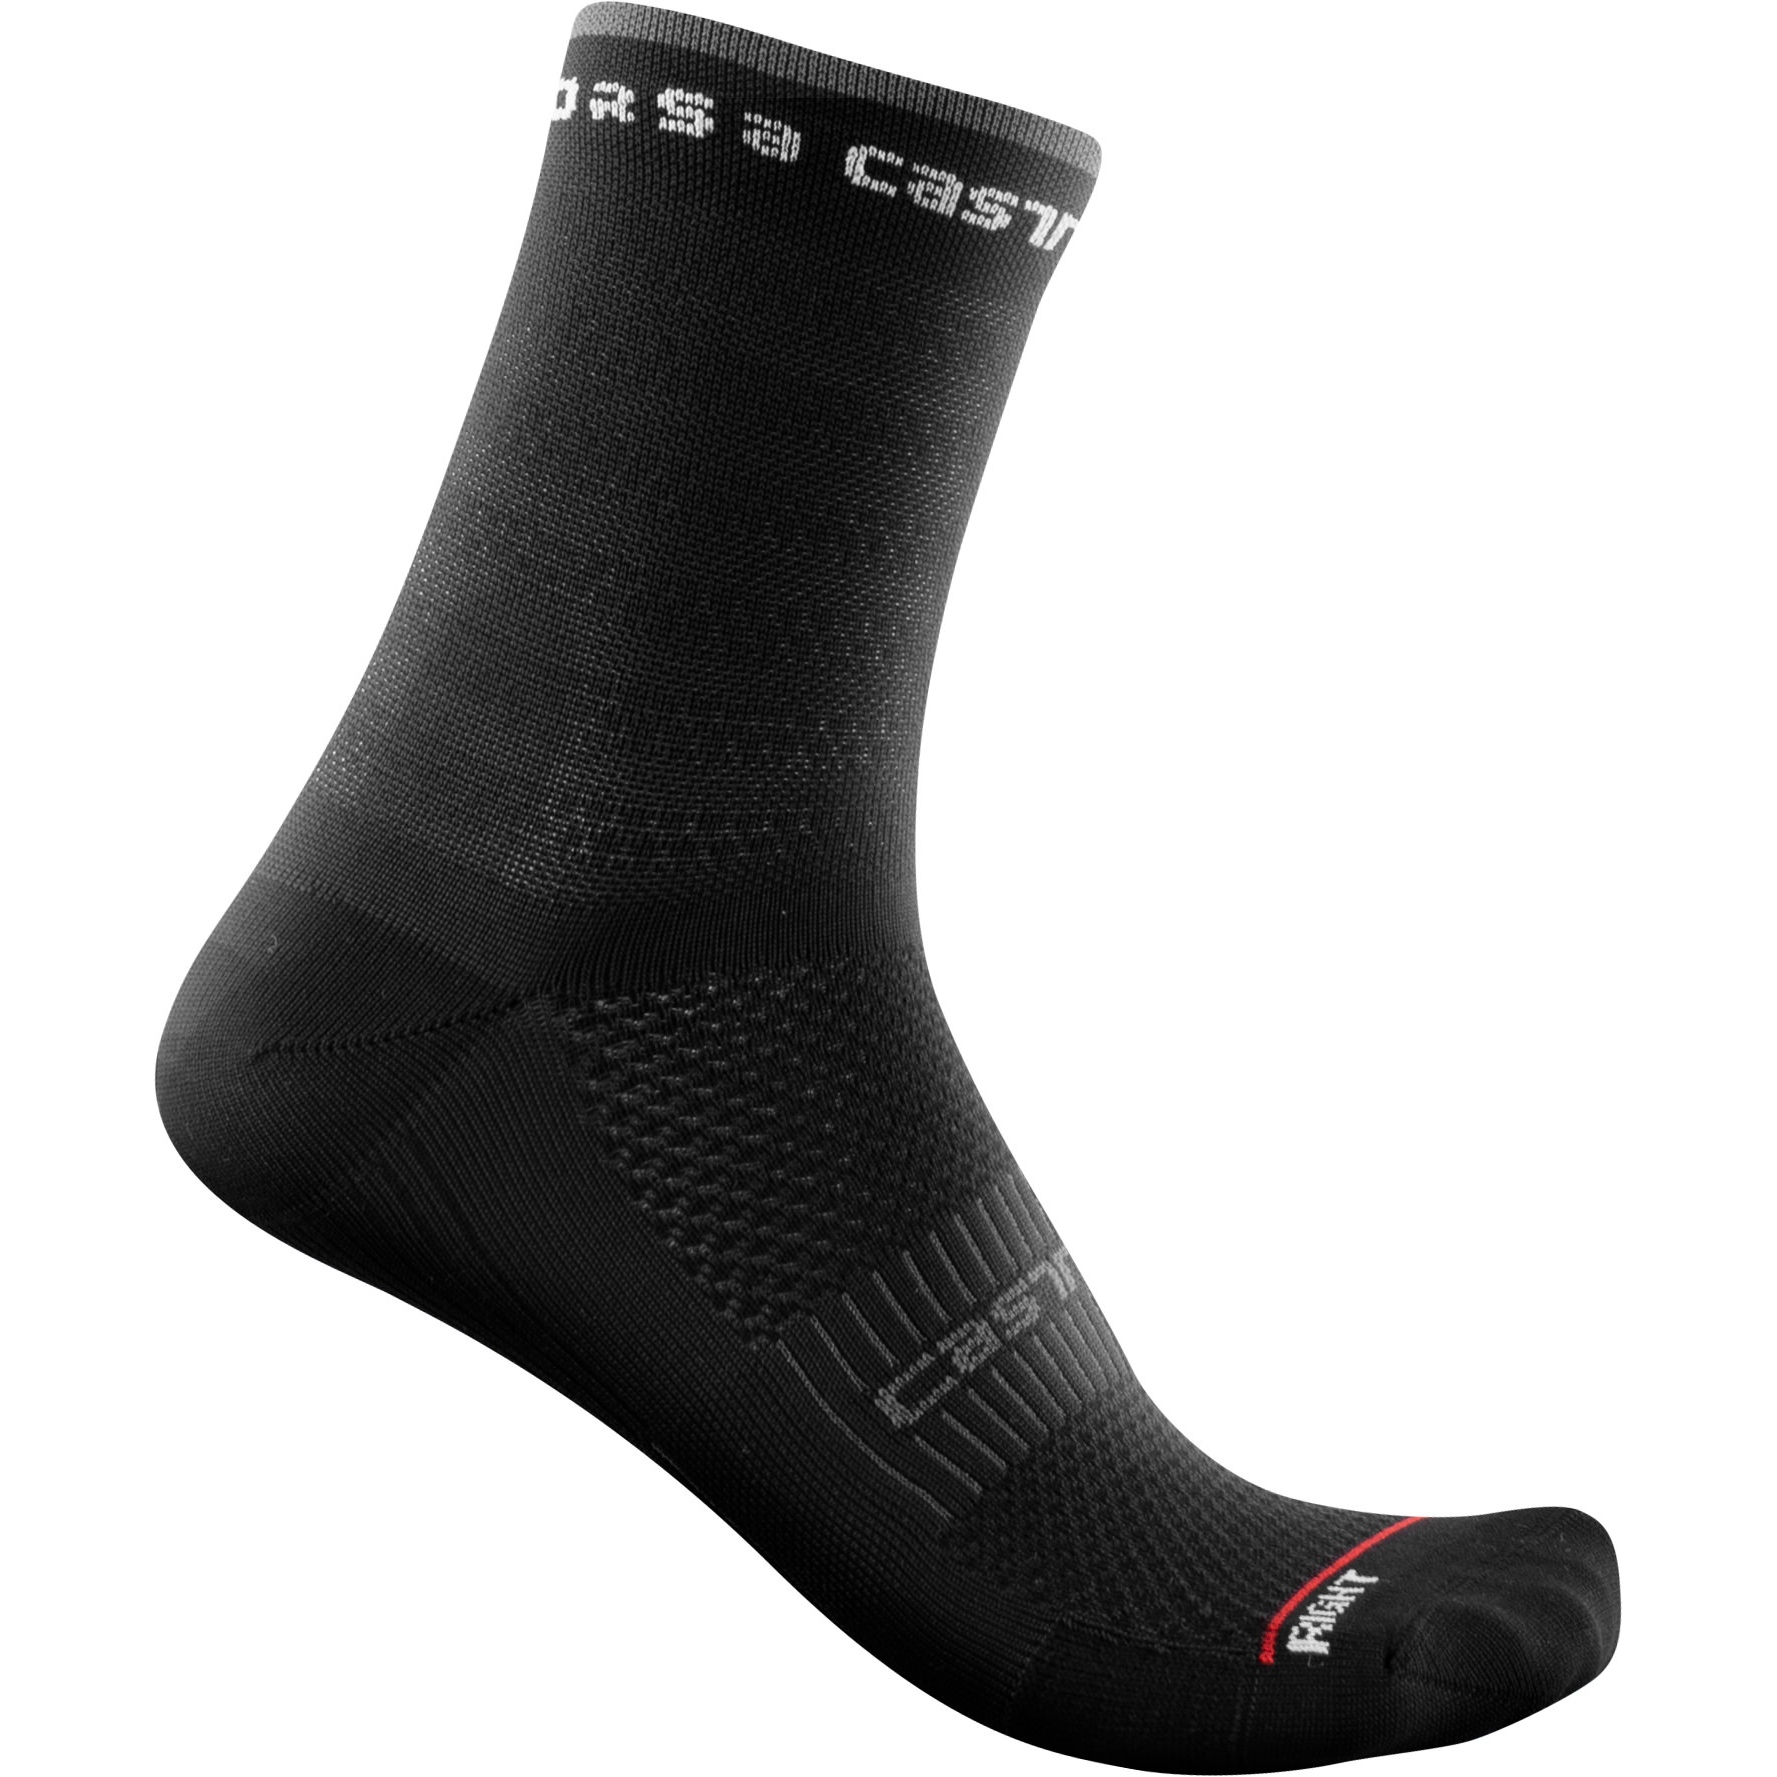 Produktbild von Castelli Rosso Corsa 11 Socken Damen - schwarz 010